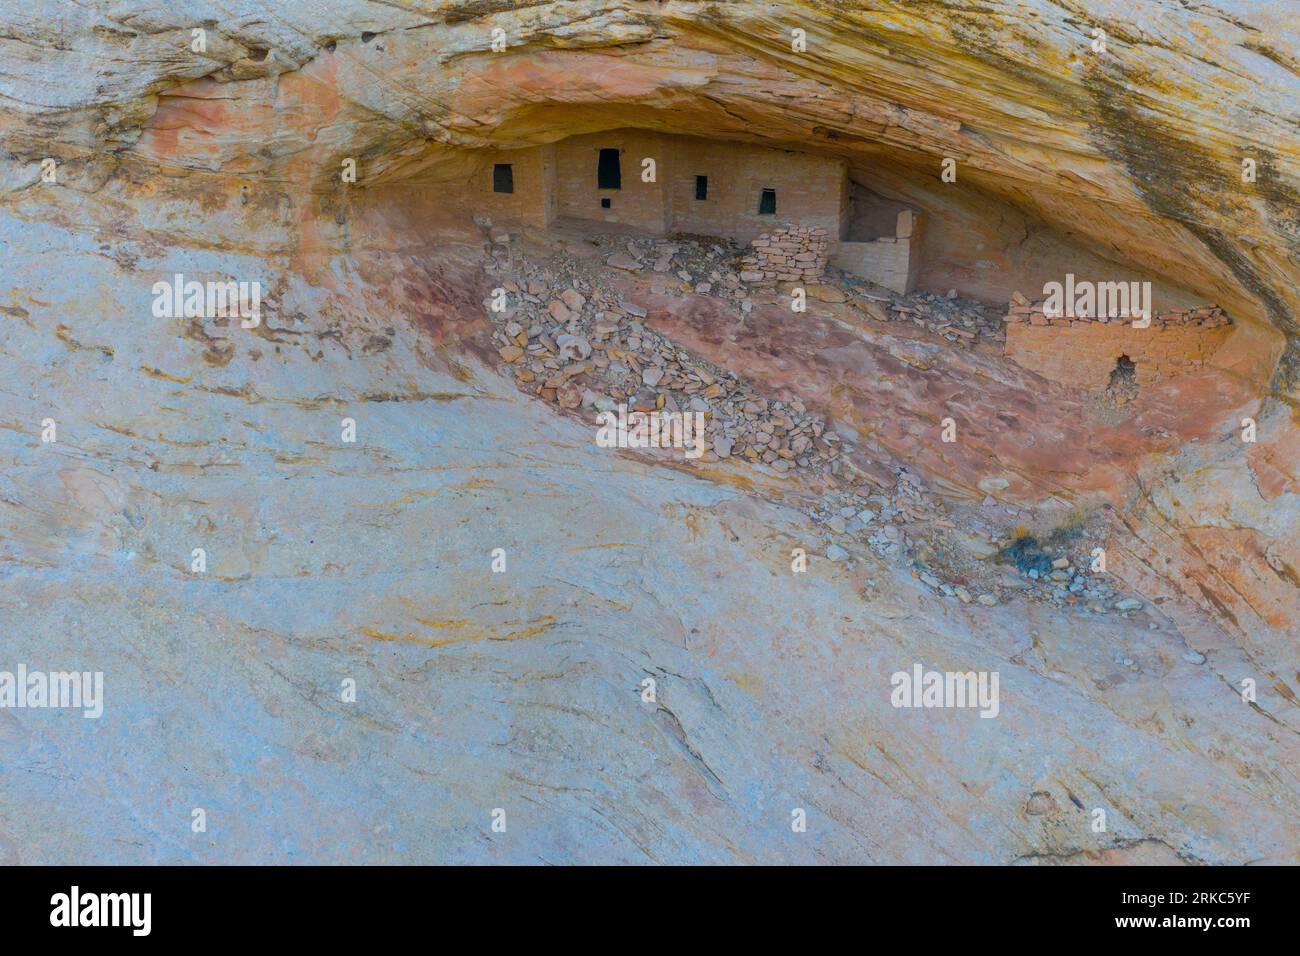 Ruine dans la grotte, Bears Ears National Monument, Utah Ancient Amérindiens structures Banque D'Images